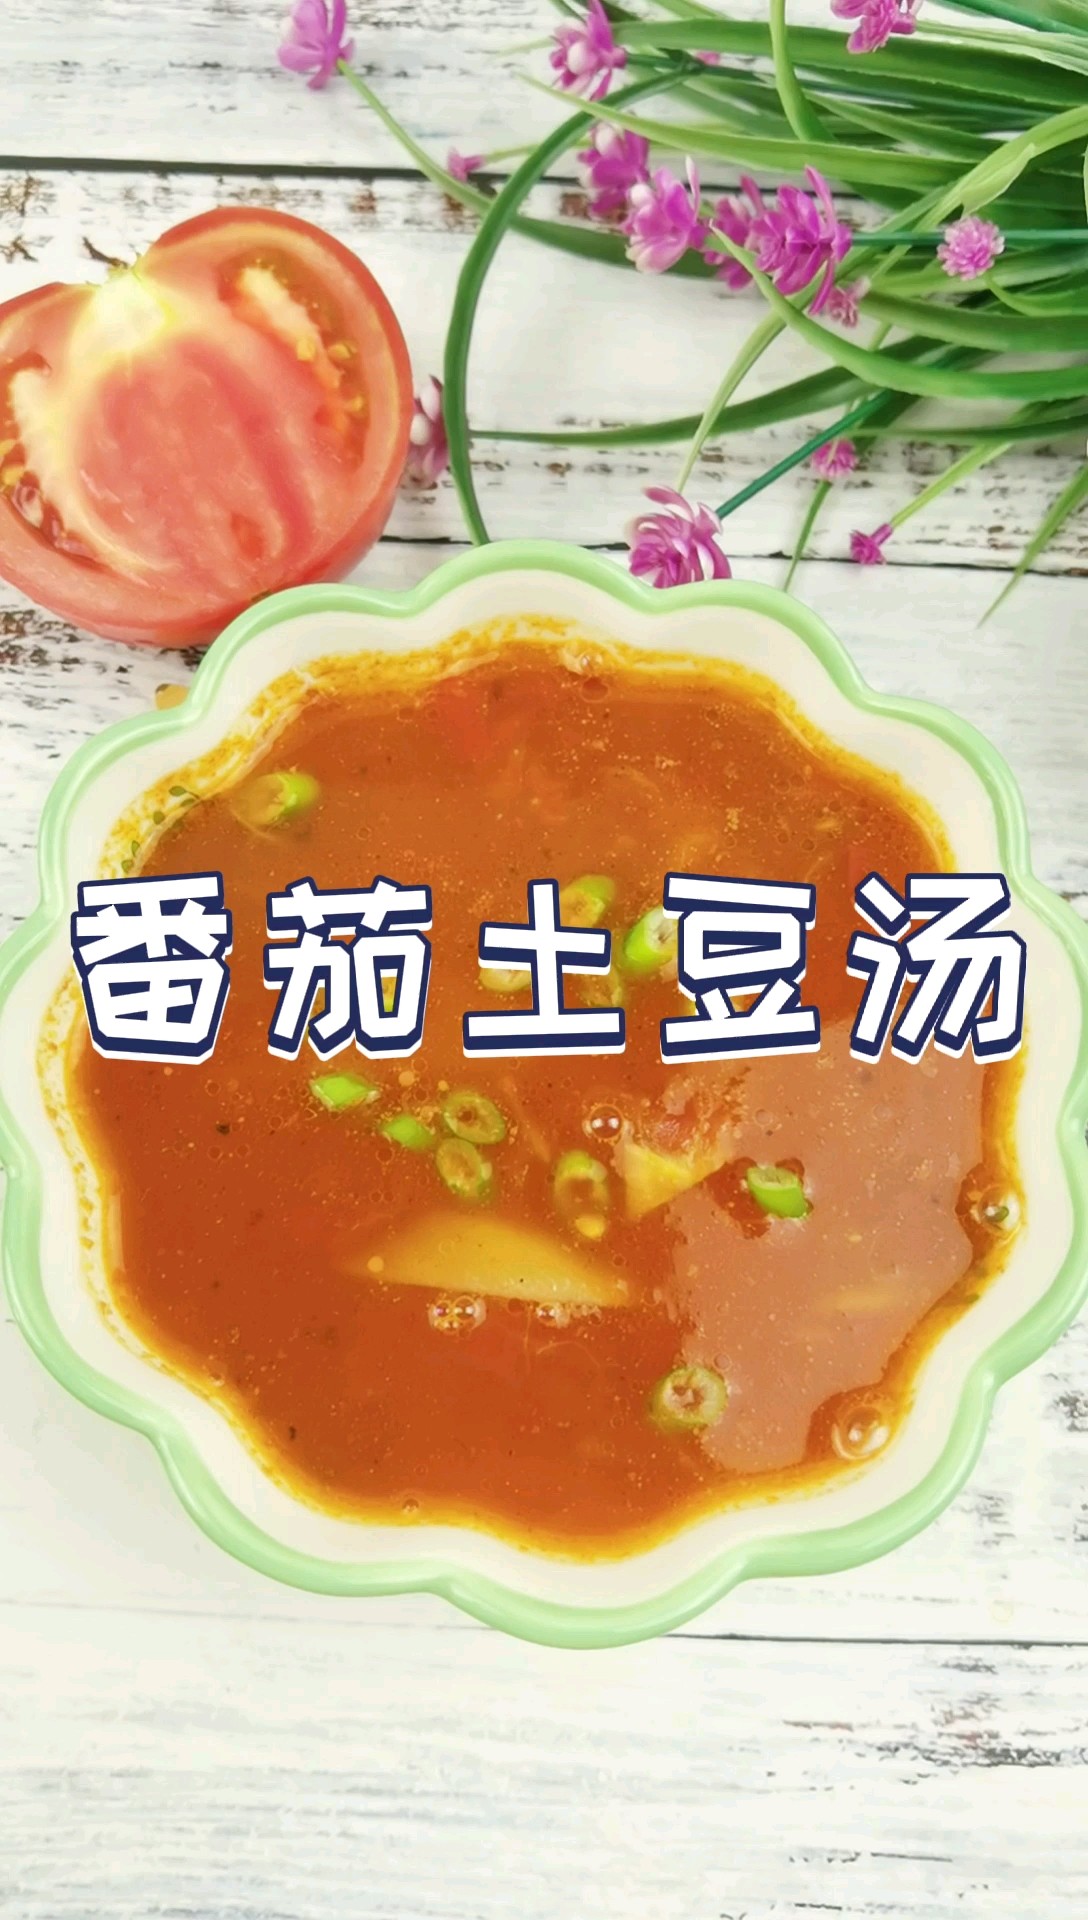 我是半滴雨#来自内蒙古#，参赛作品为酸甜开胃又好喝的番茄土豆汤